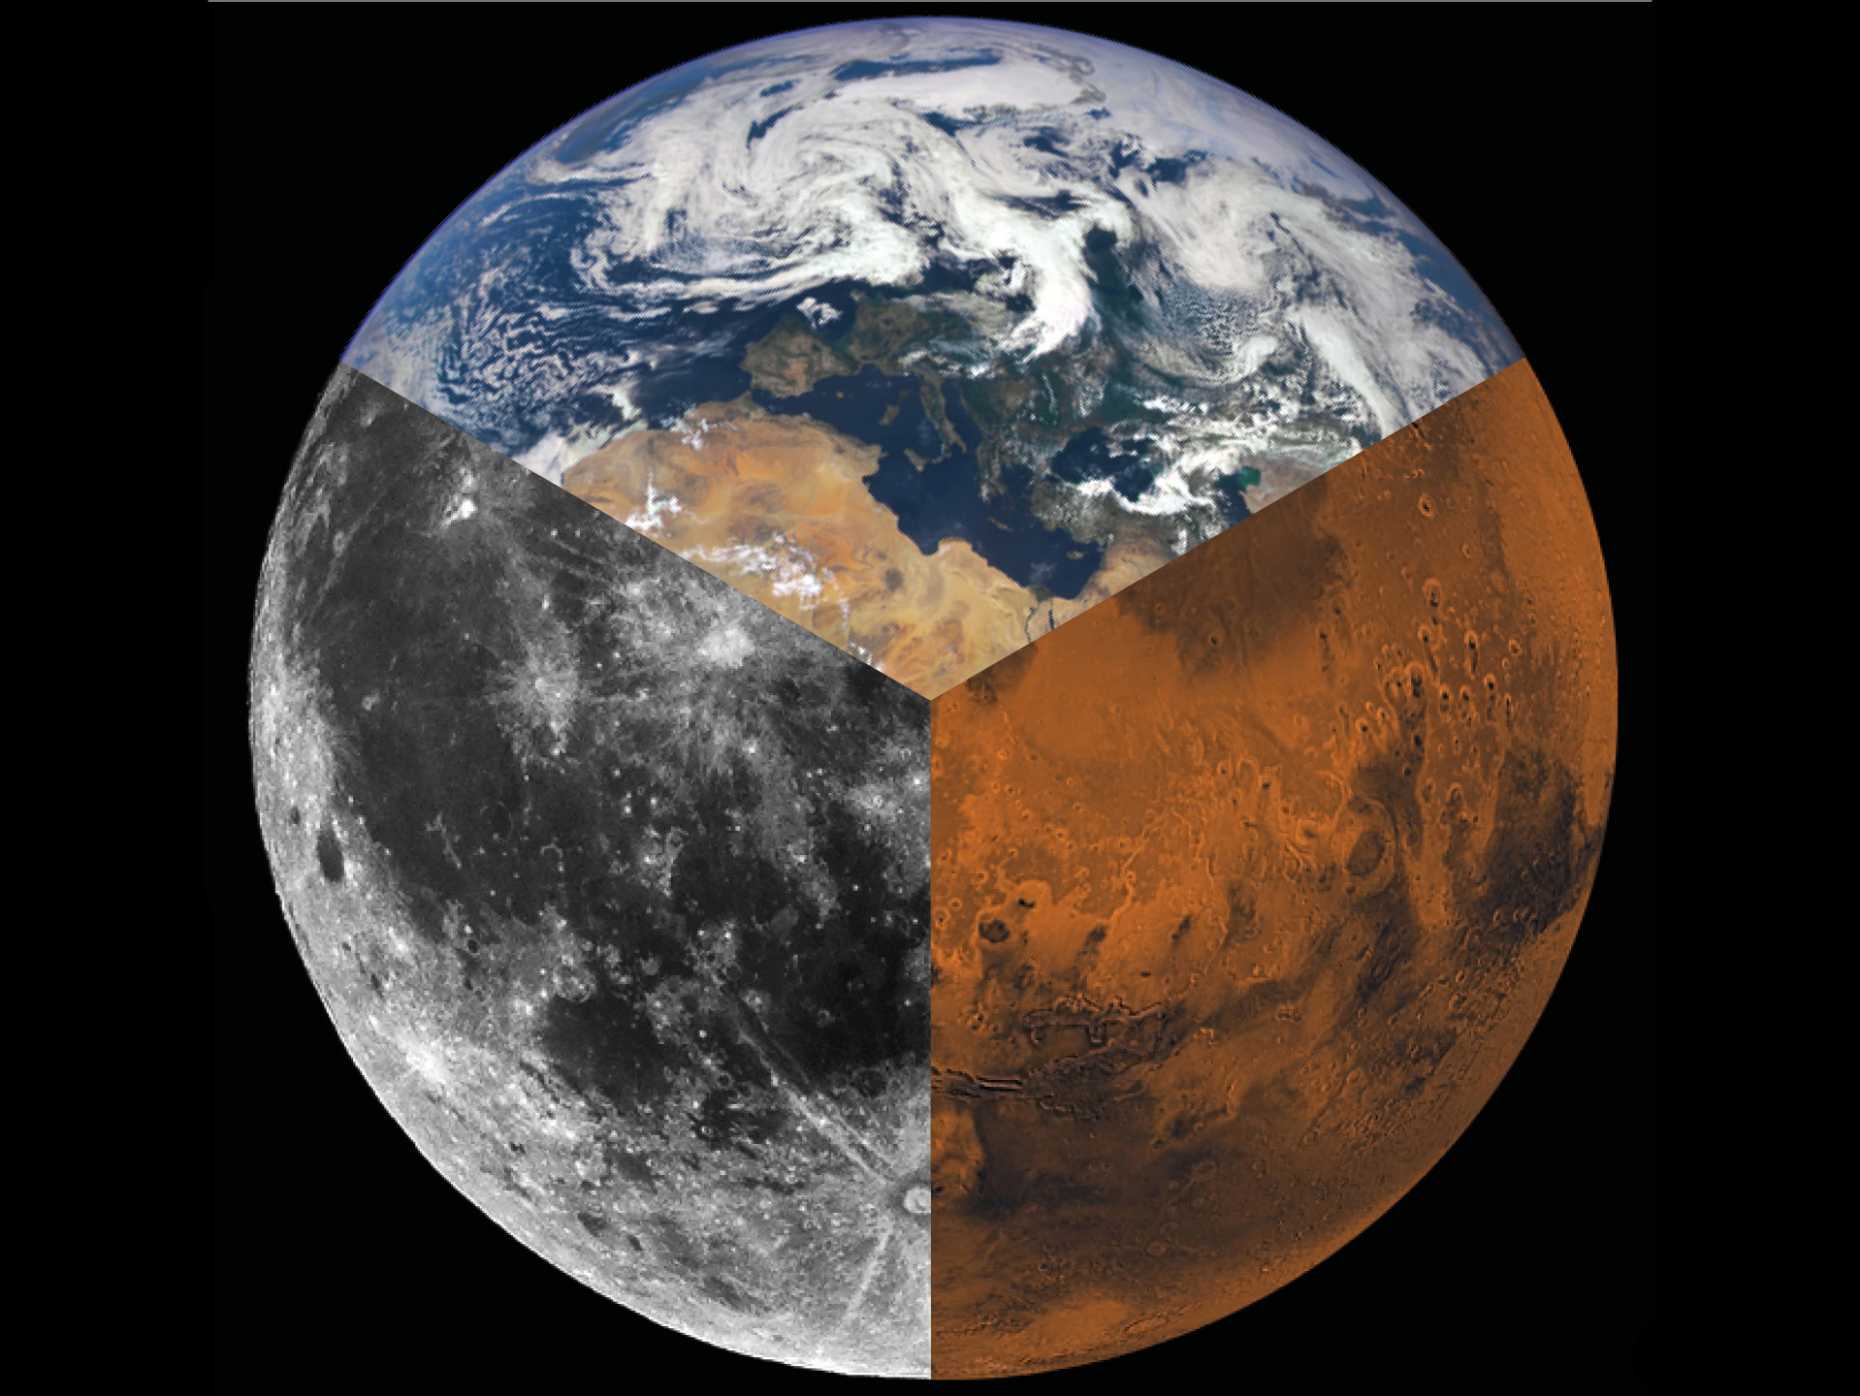 Images: NASA